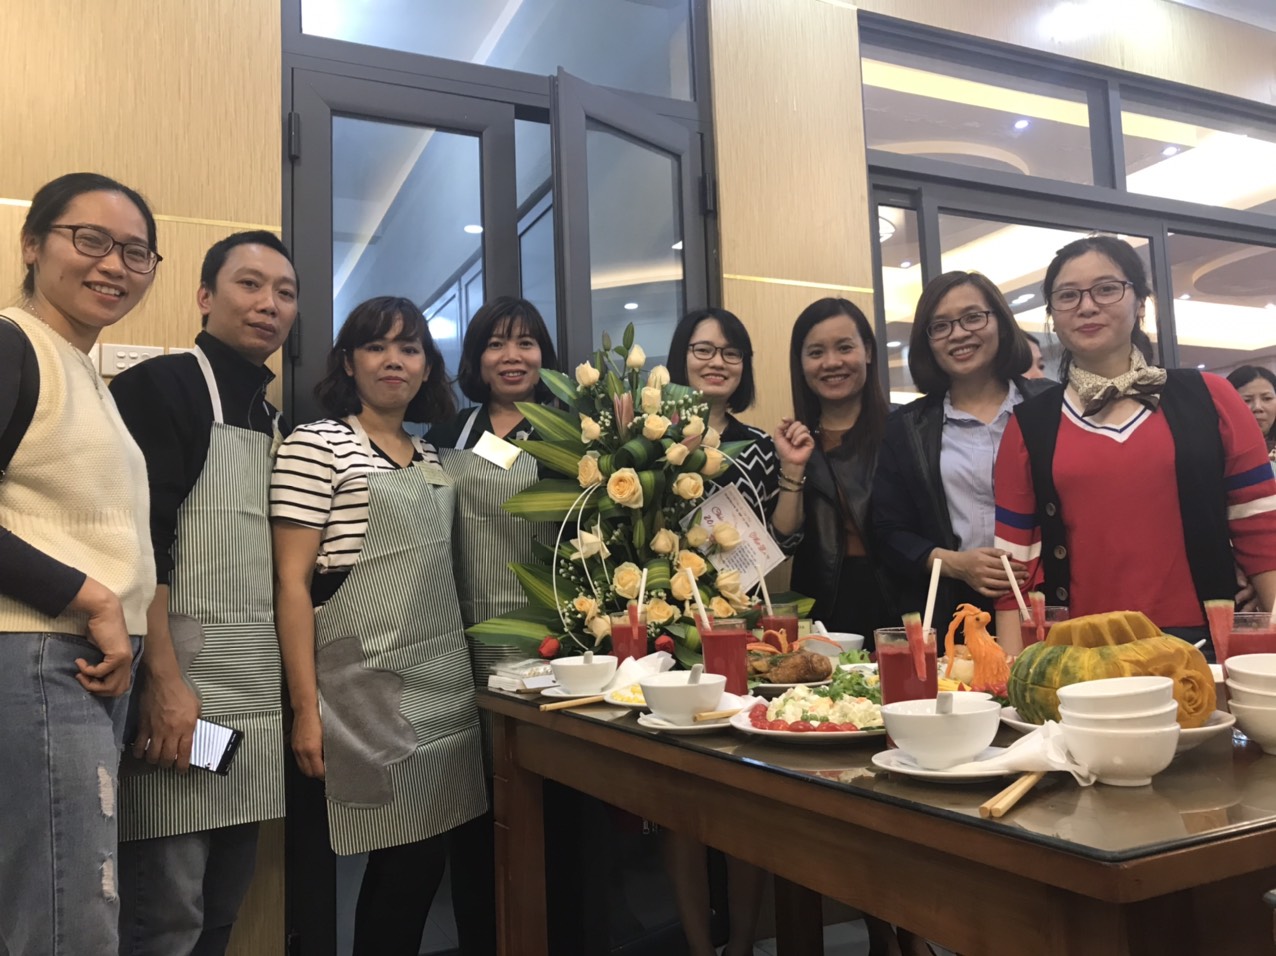 Đội tuyển liên quân Khoa công nghệ ô tô – Cơ khí đạt giải khuyến khích tại Hội thi nấu ăn và cắm hoa chào mừng Ngày thành lập Hội Liên hiệp Phụ nữ Việt Nam 20/10